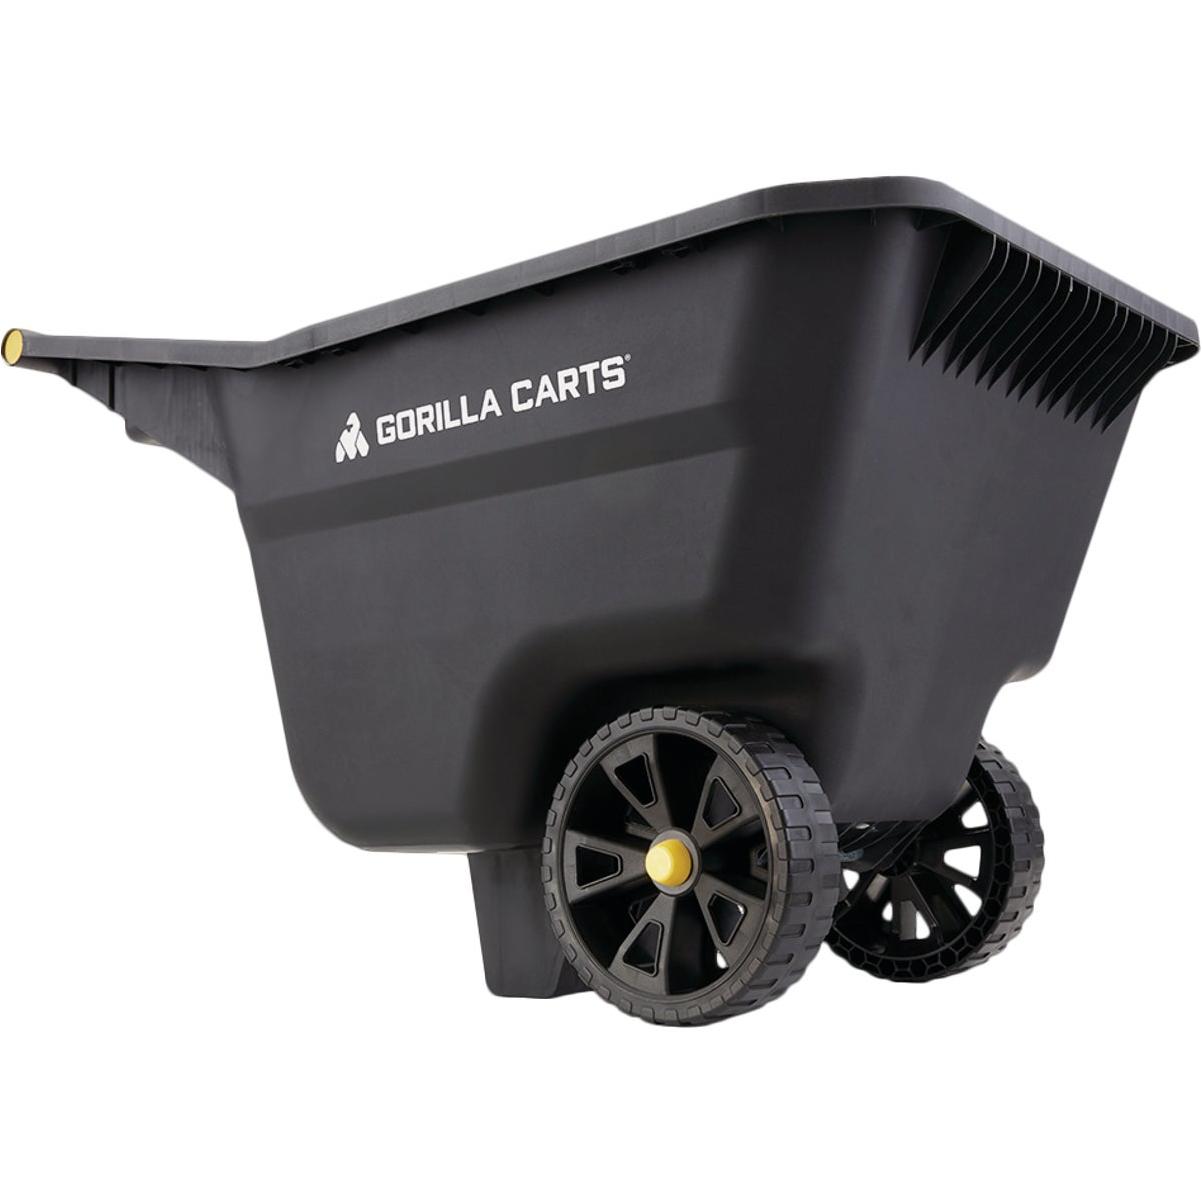 Gorilla Carts 5 Cu. Ft. Poly Yard Cart